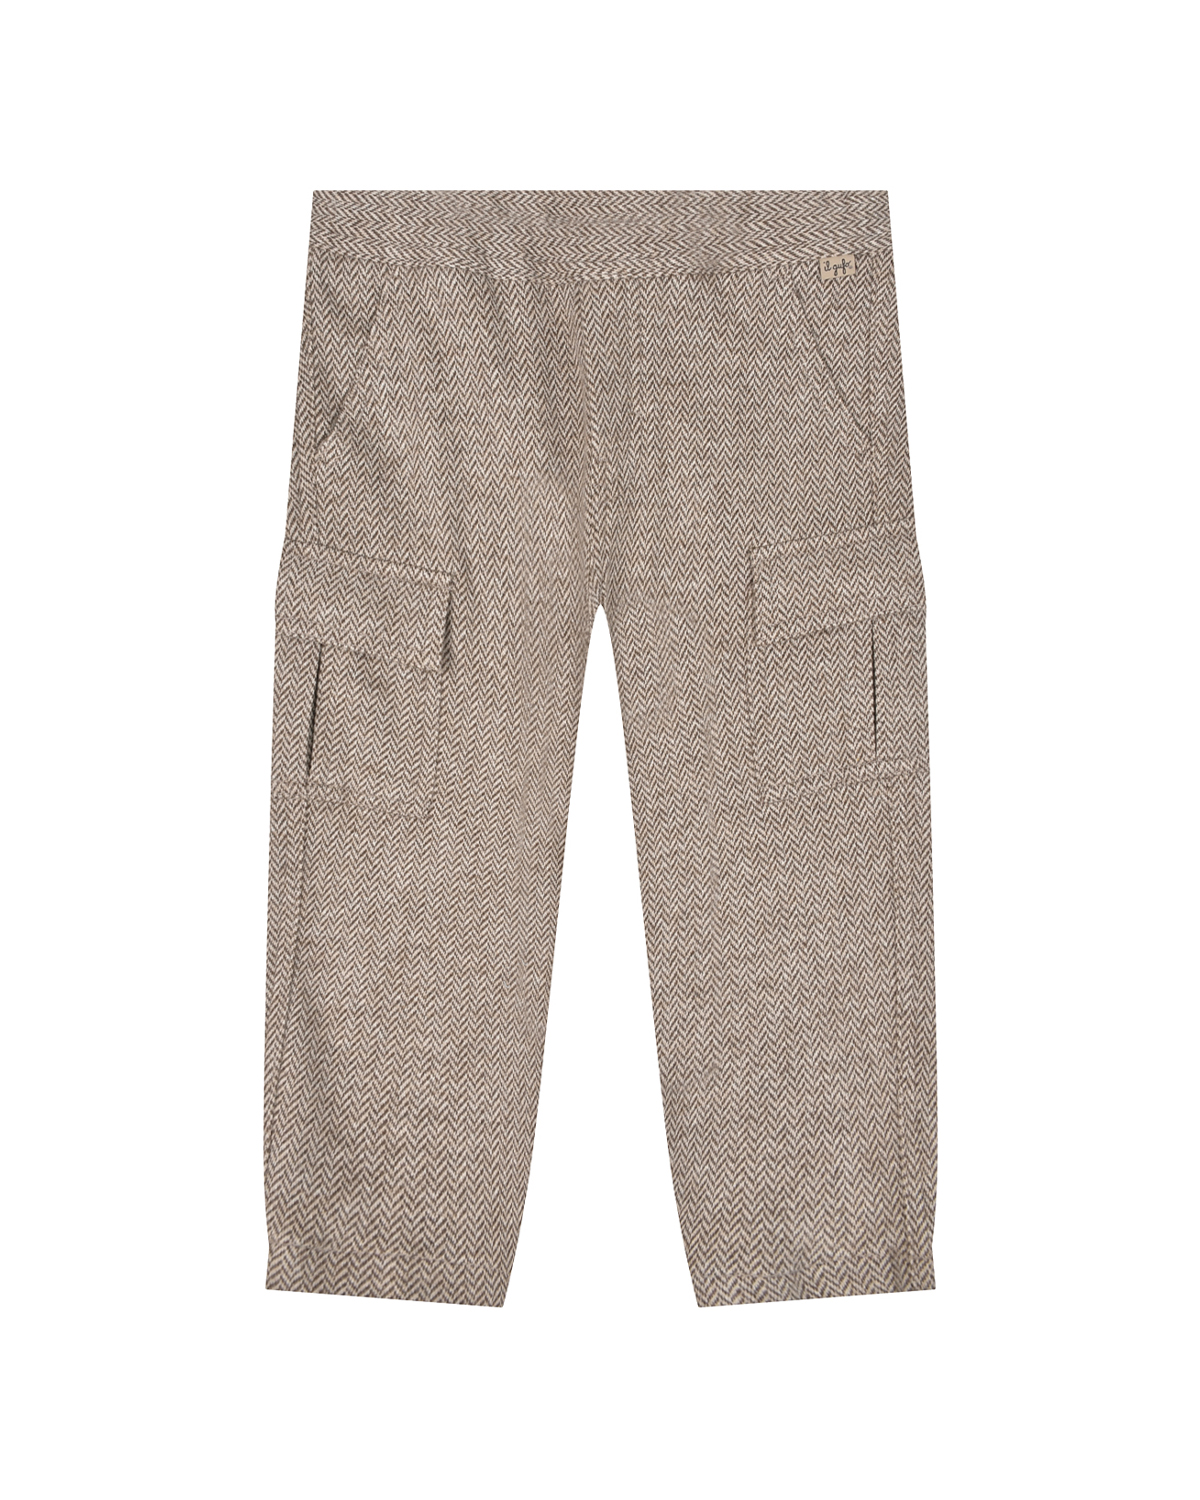 Бежевые брюки с карманами карго IL Gufo детские, размер 92, цвет бежевый